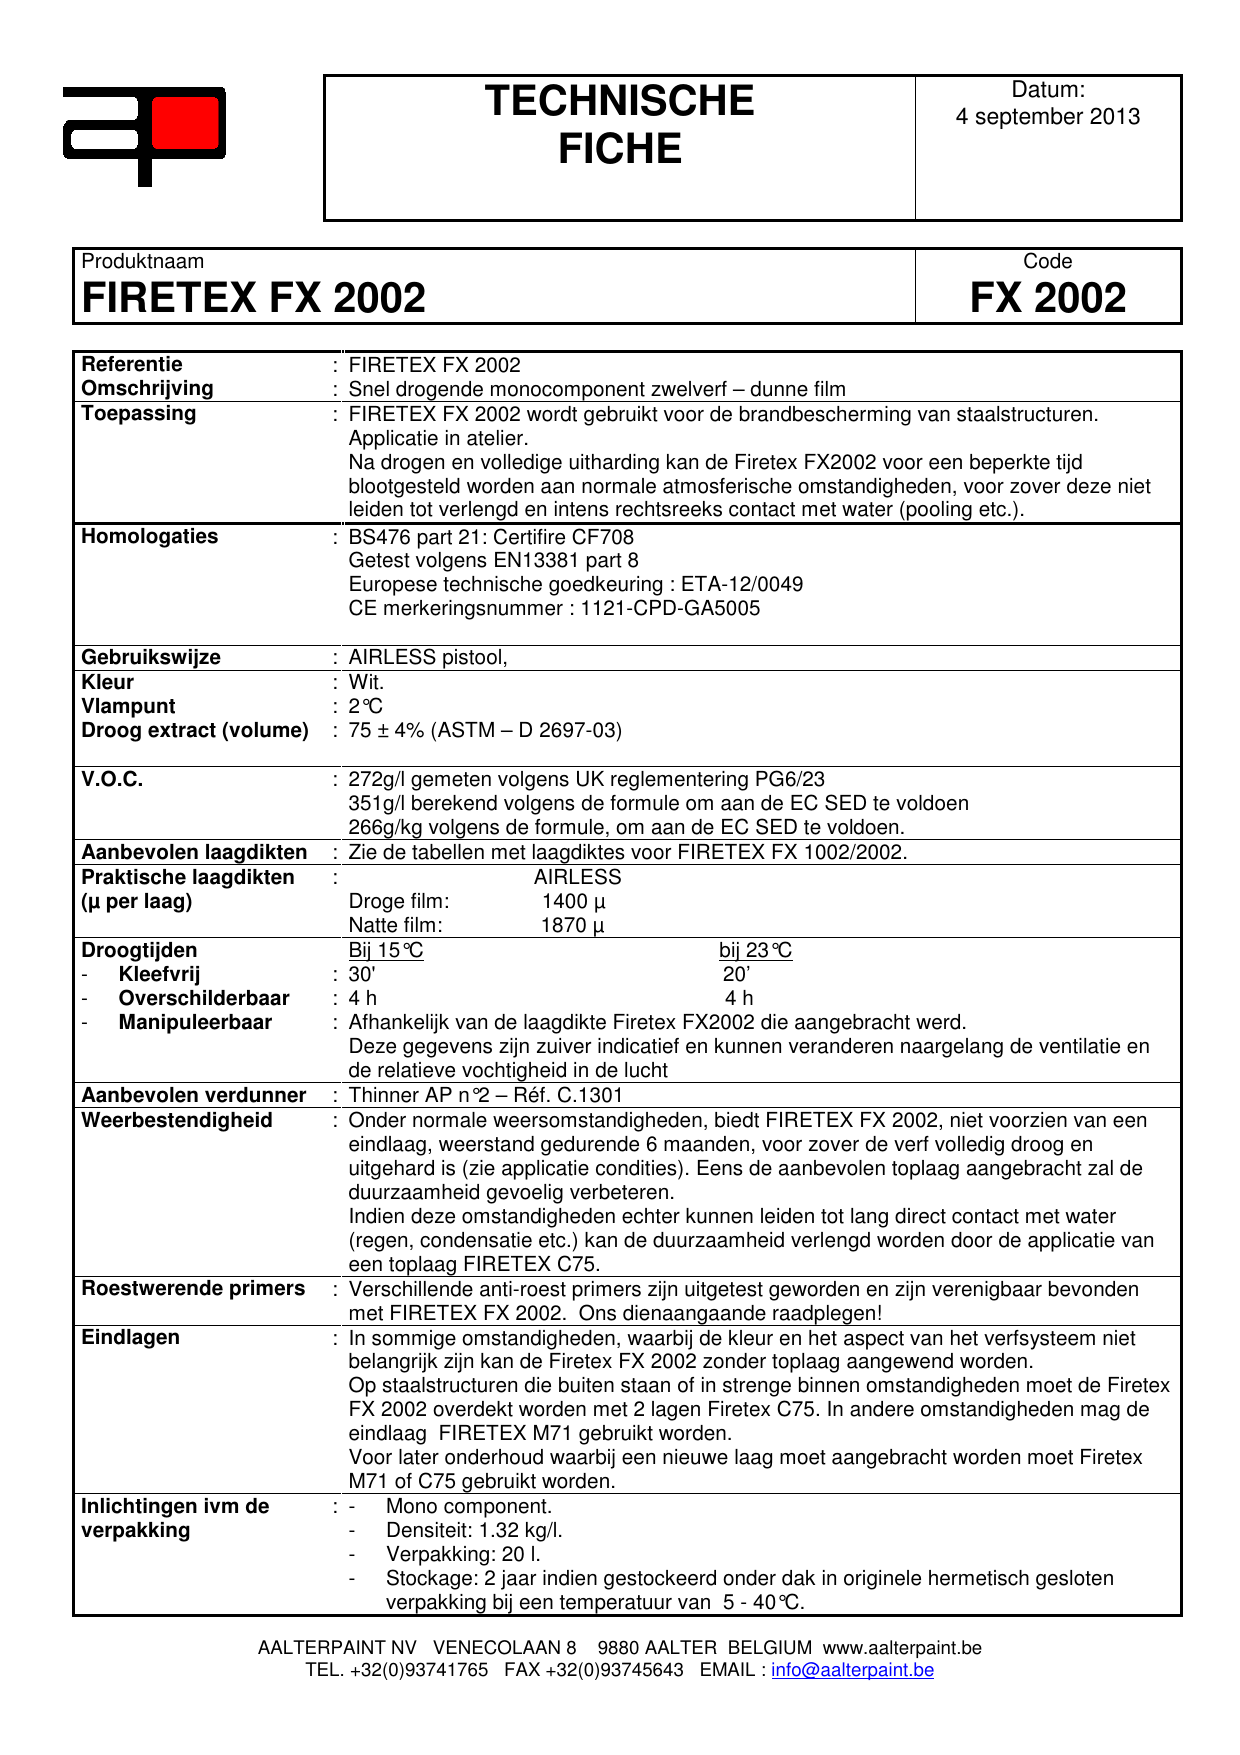 roddel Subjectief kever technische fiche firetex fx 2002 fx 2002